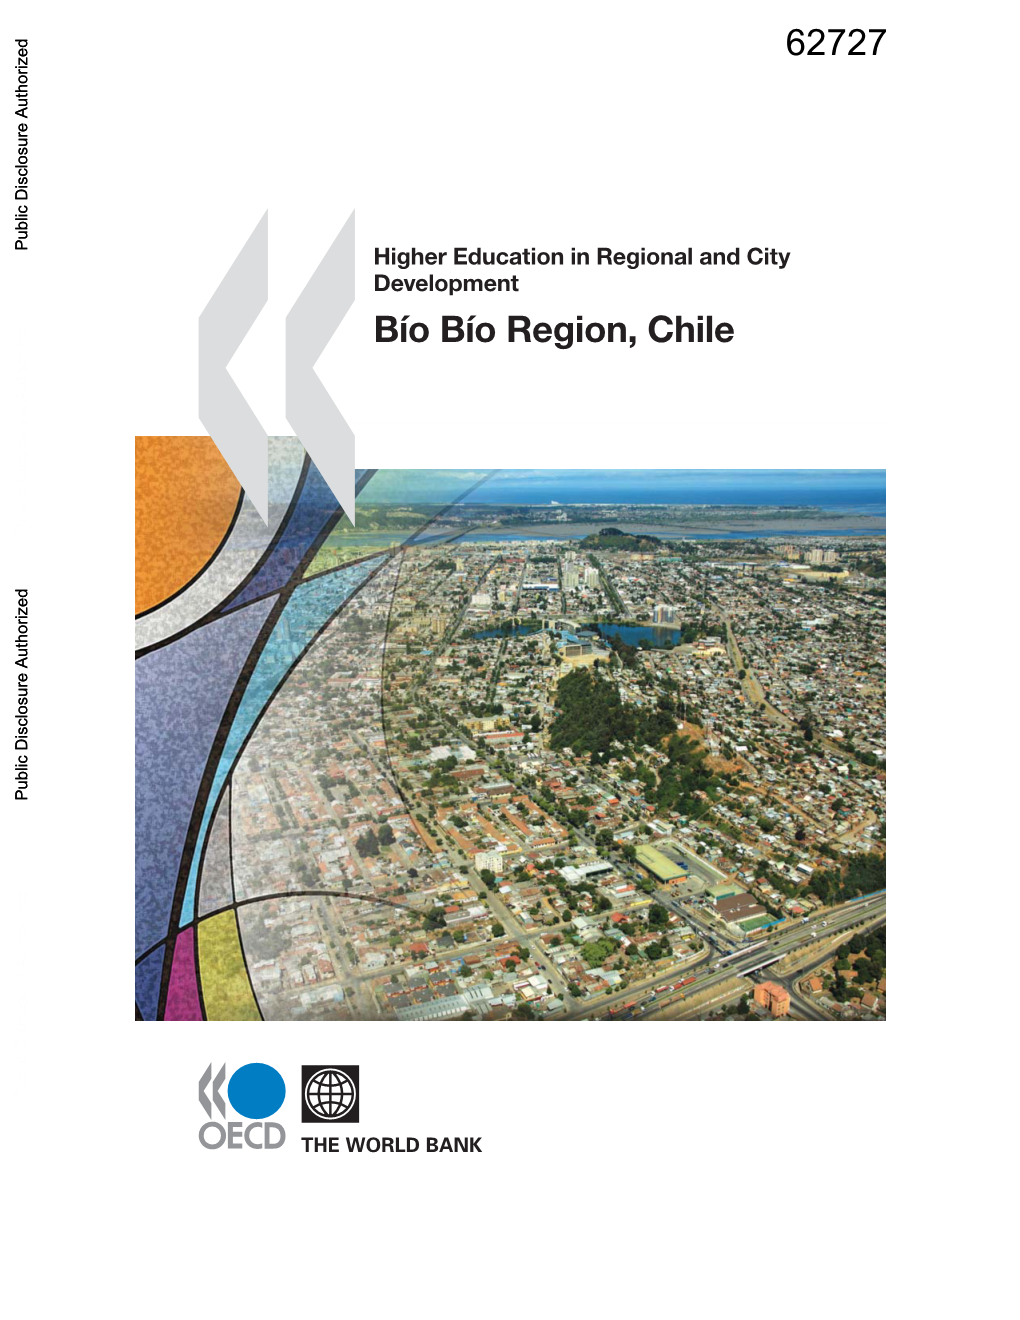 Bío Bío Region, Chile Public Disclosure Authorized Public Disclosure Authorized Public Disclosure Authorized